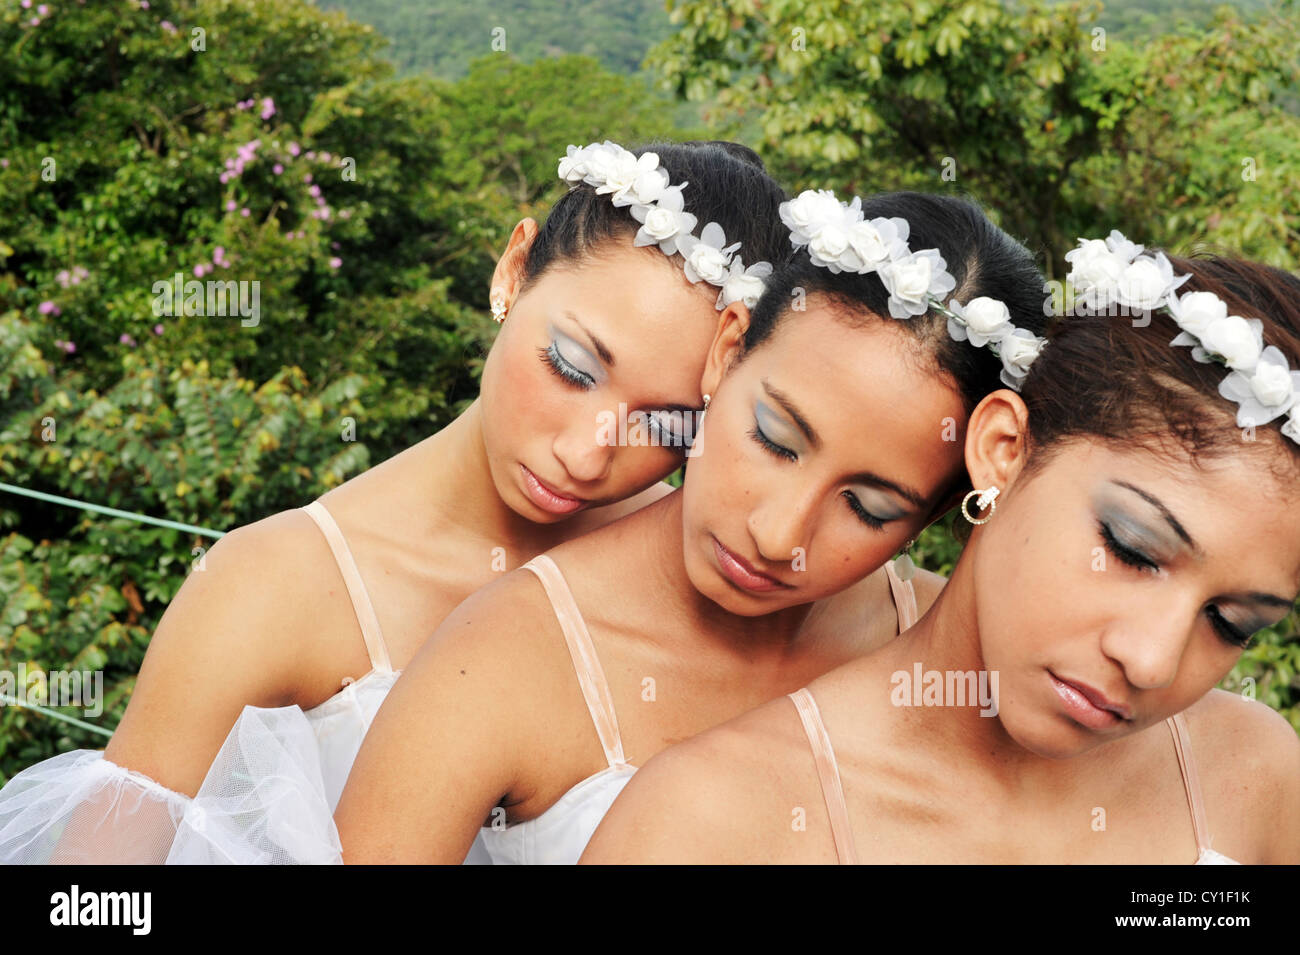 Ballerinas in a sleeping pose outdoors. Stock Photo